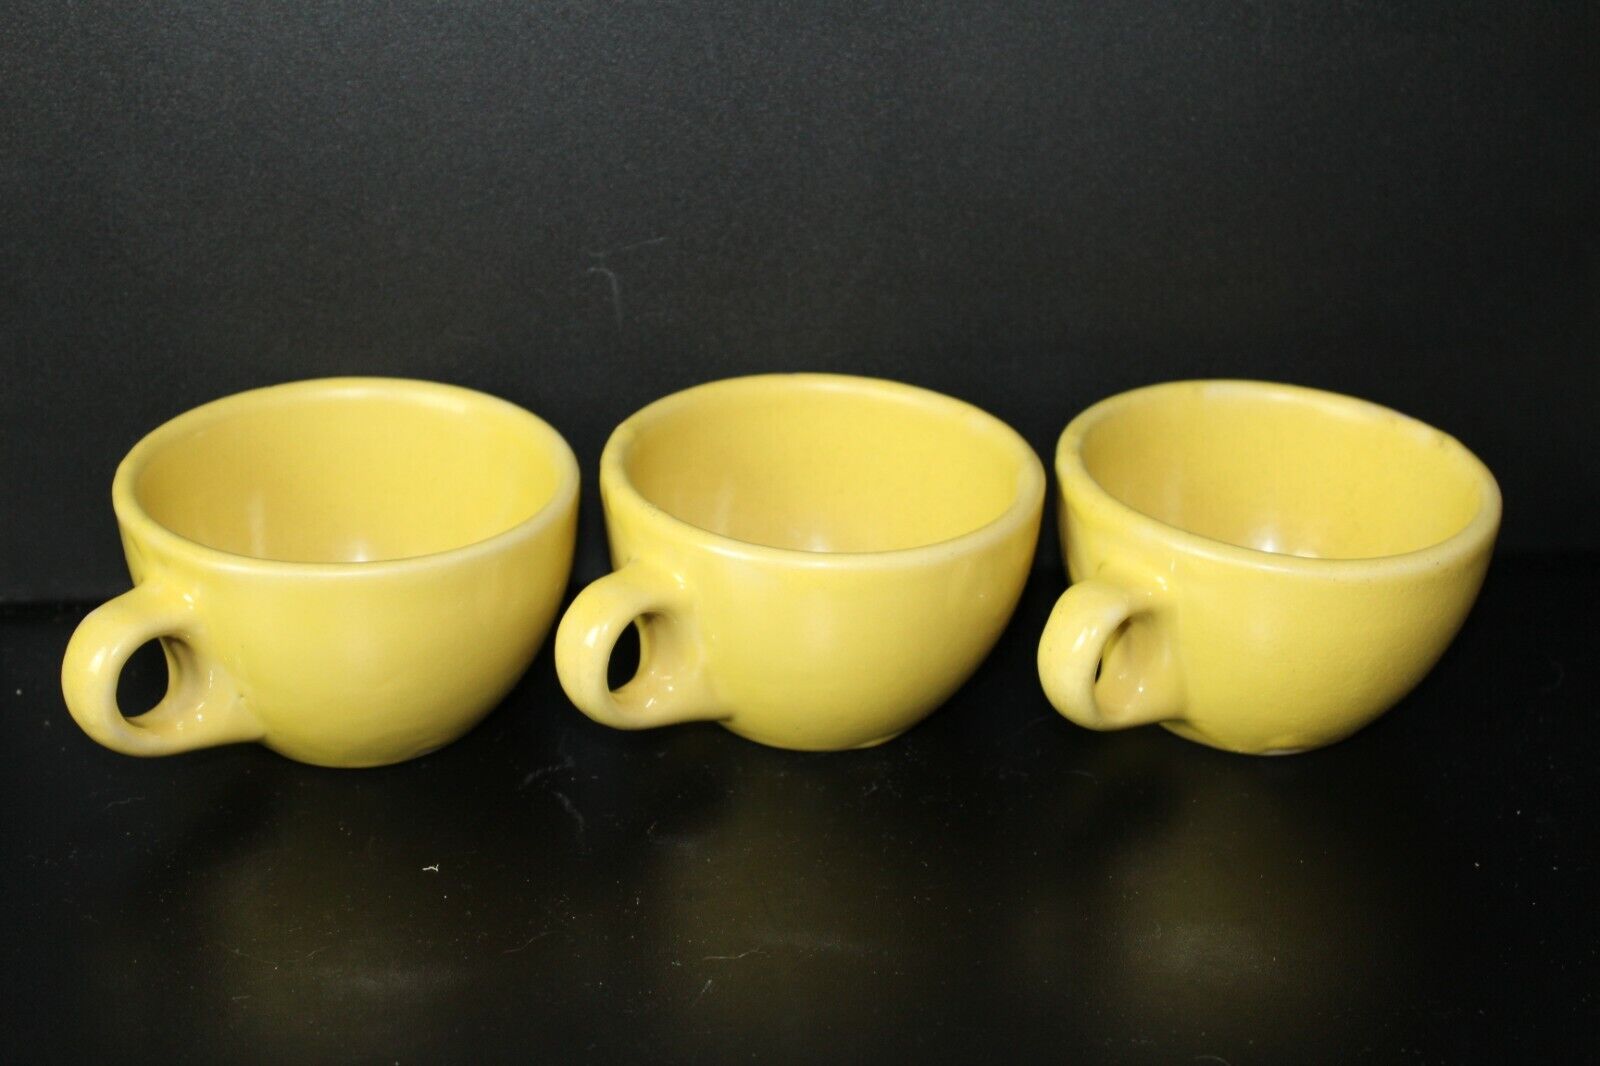 Vintage Tepco China Yellow Tan Rustic Coffee Mug Cup Tea Set Of 3 USA